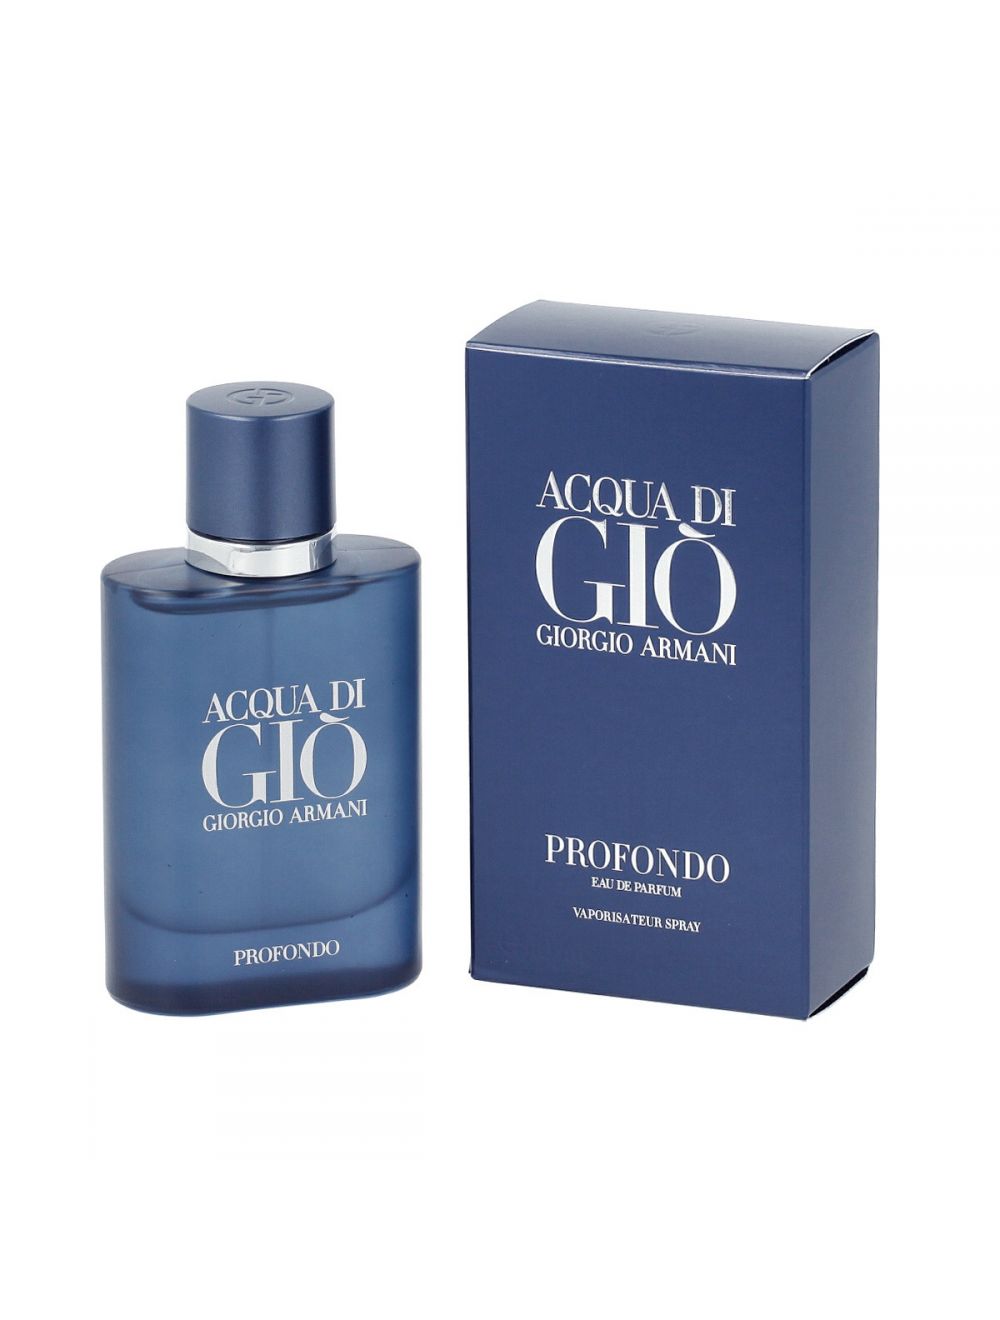 Eau de parfum Acqua di Gió Profondo 125 ml Giorgio Armani